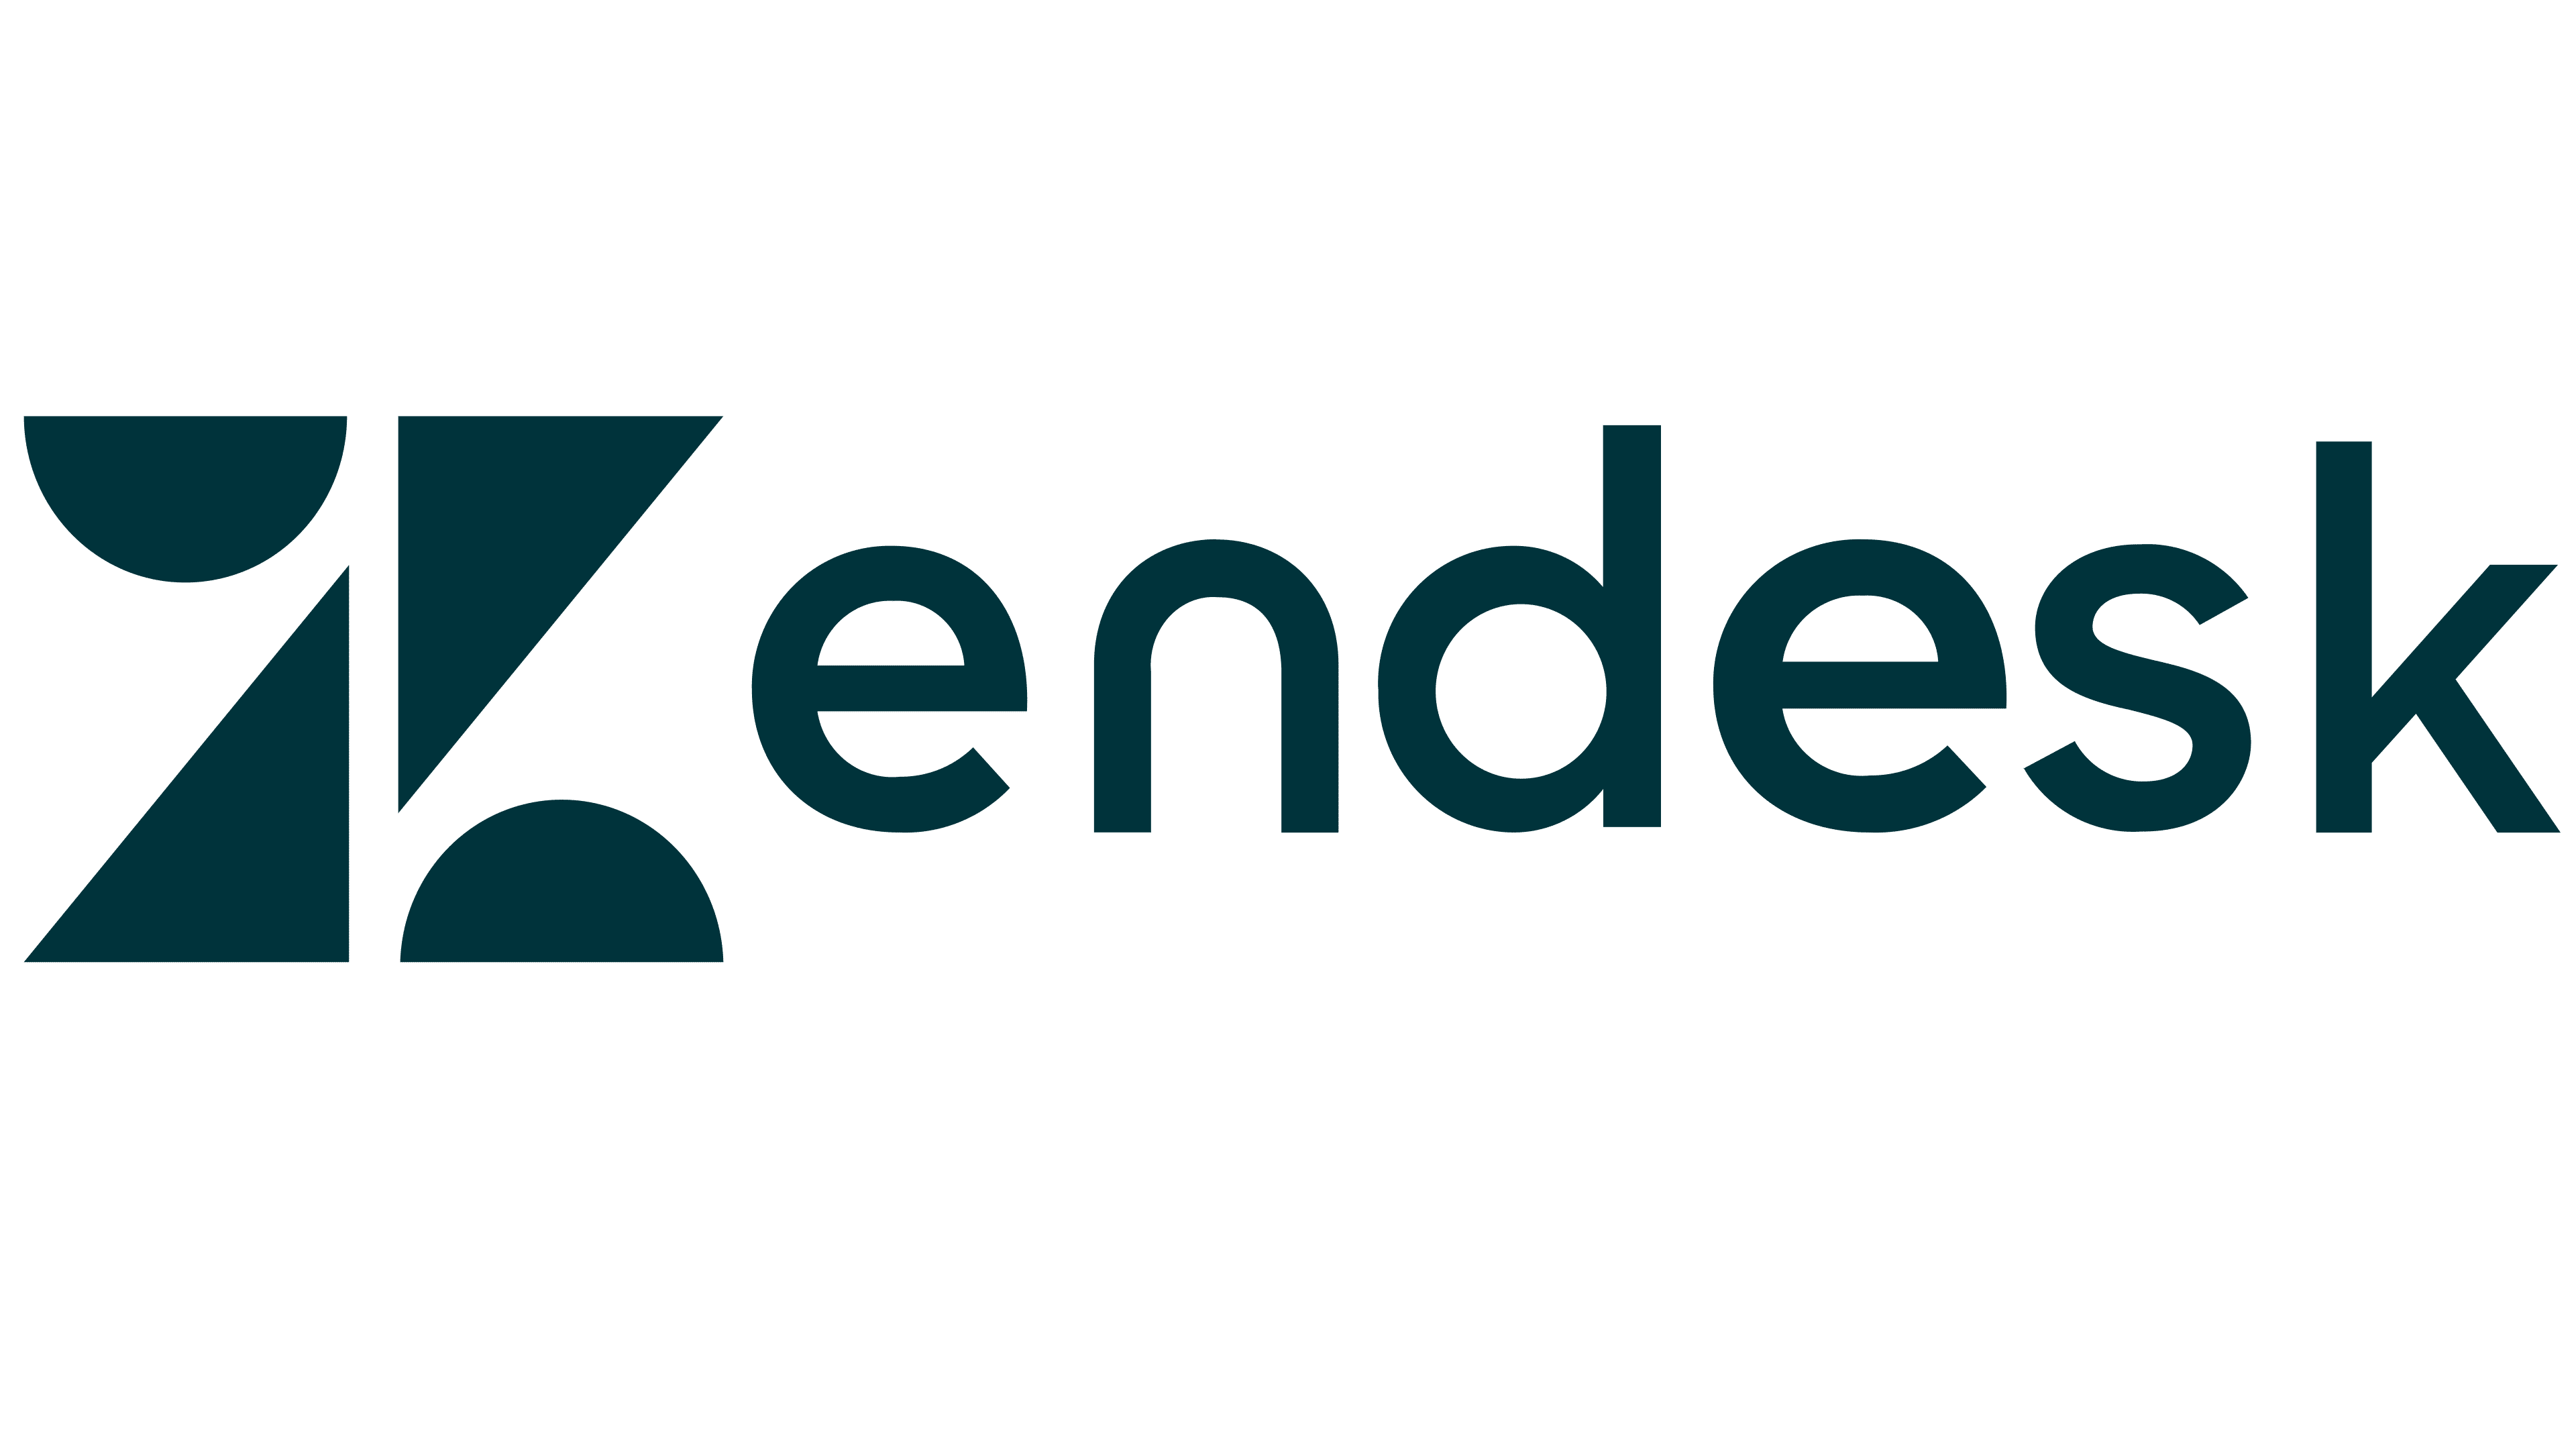 Zendesk-Logo